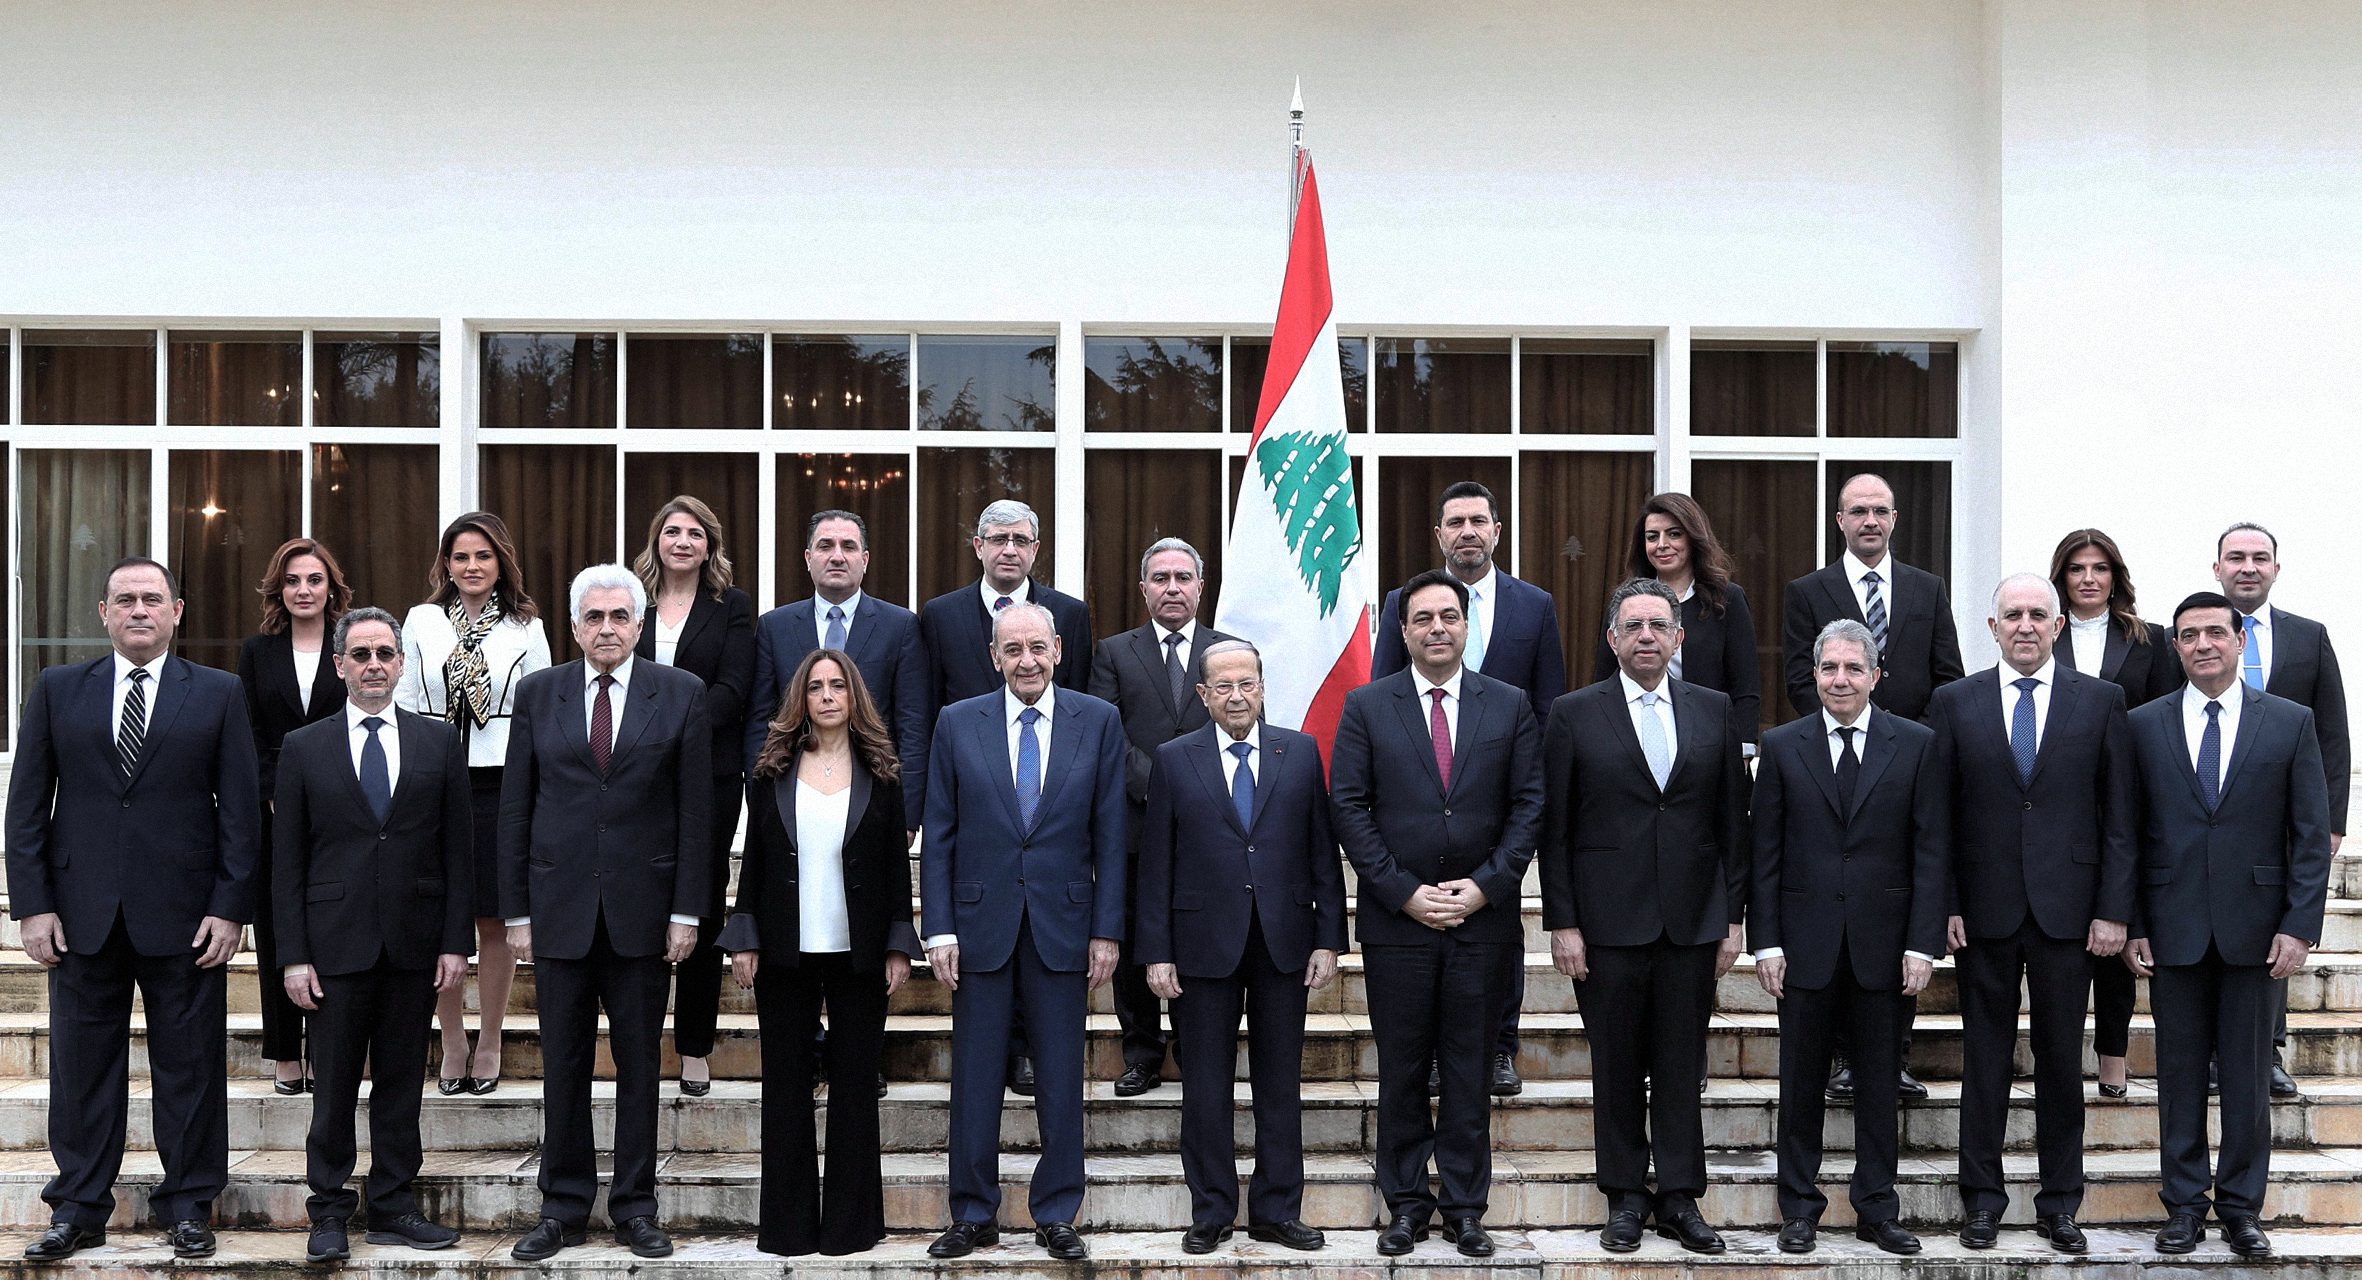 صورة الأحزاب اللبنانية تضع حكومة تكنوقراط يعرف كل وزير فيها أفضل سبل الفساد في اختصاصه